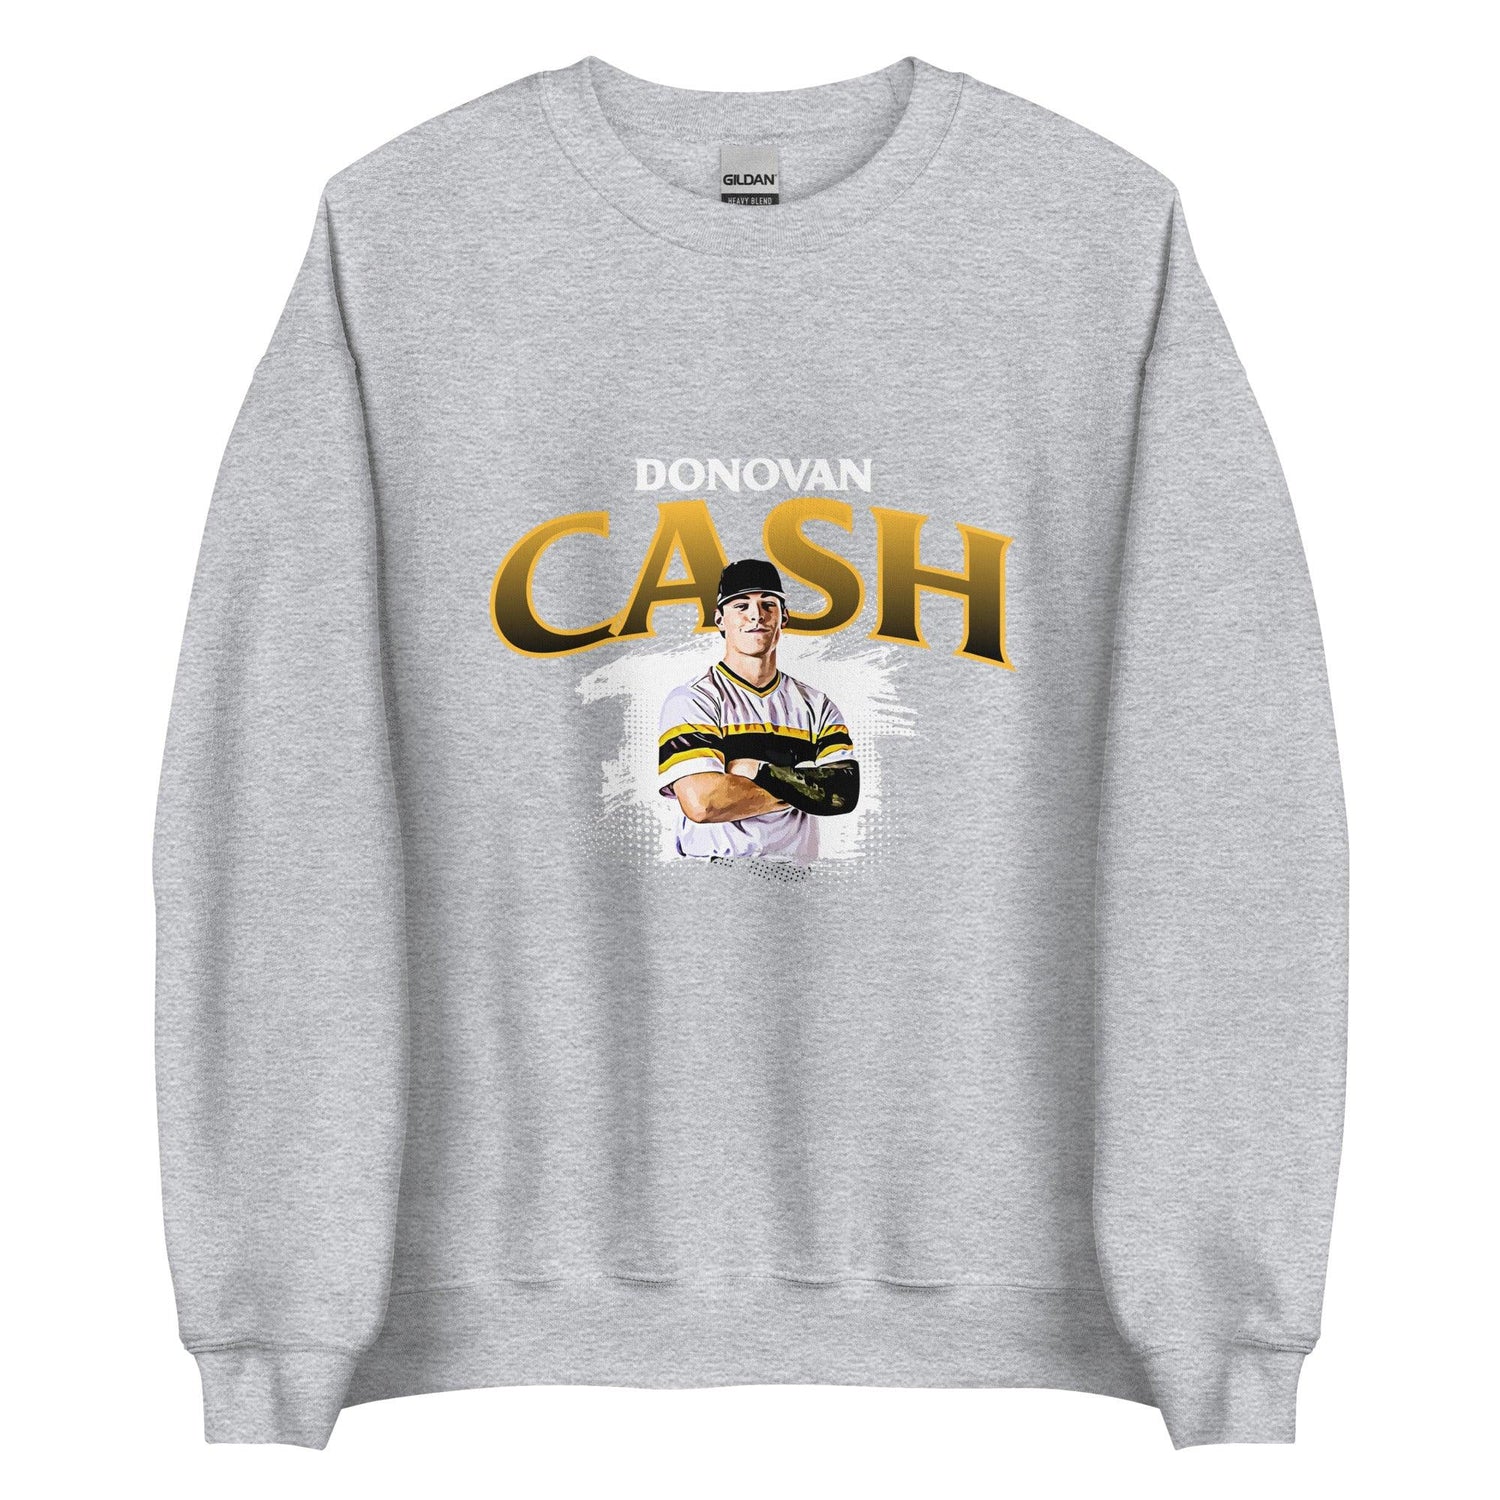 Donovan Cash "Stay Ready" Sweatshirt - Fan Arch